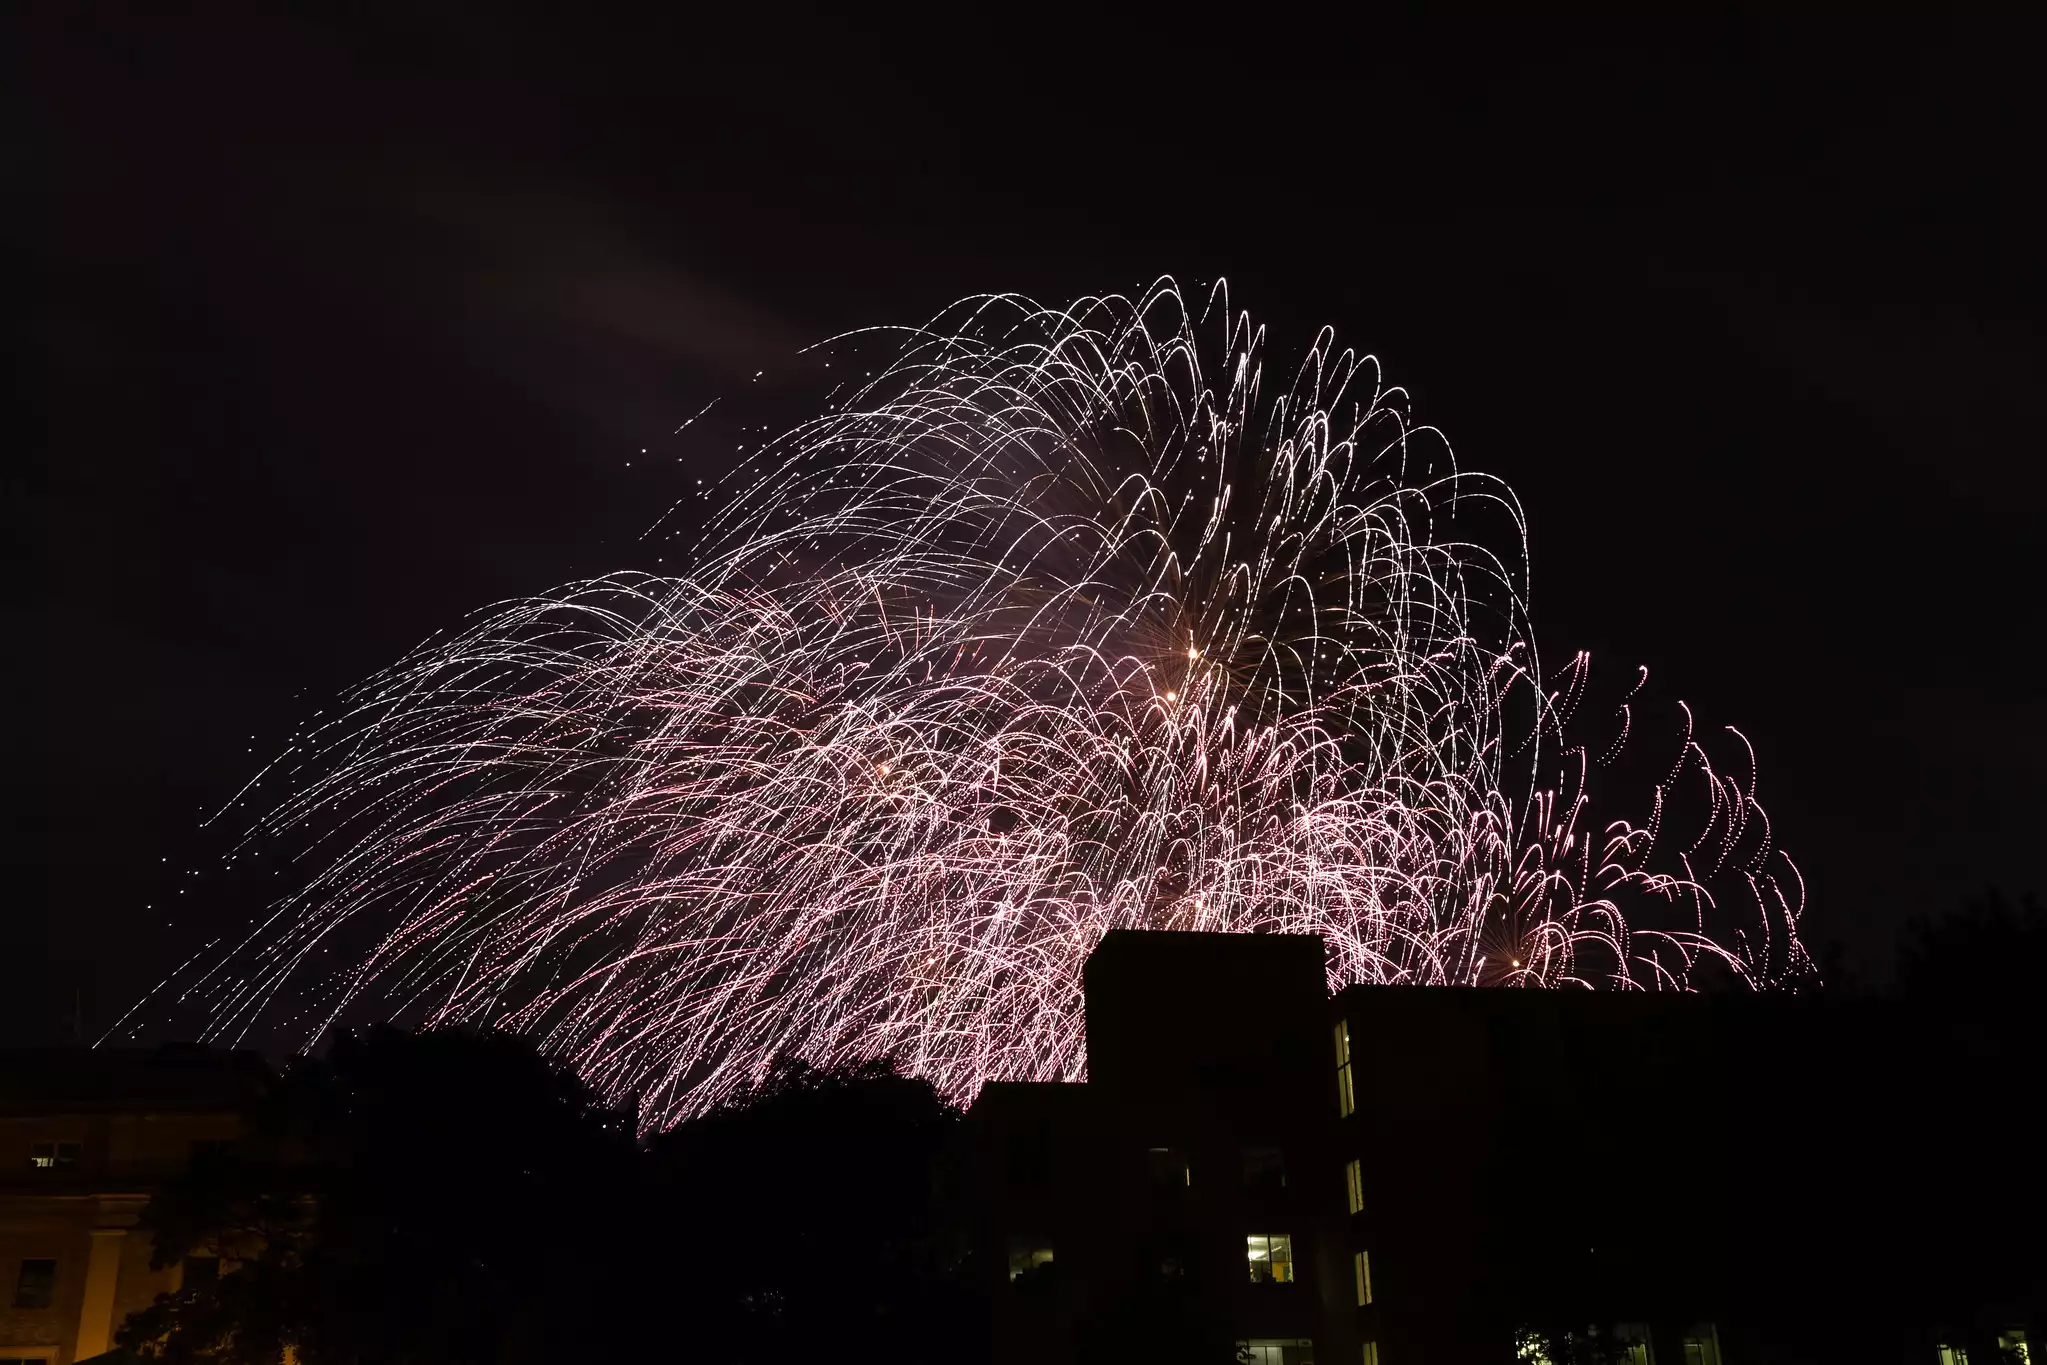 2014 Boston Pops Fireworks Spectacular #9